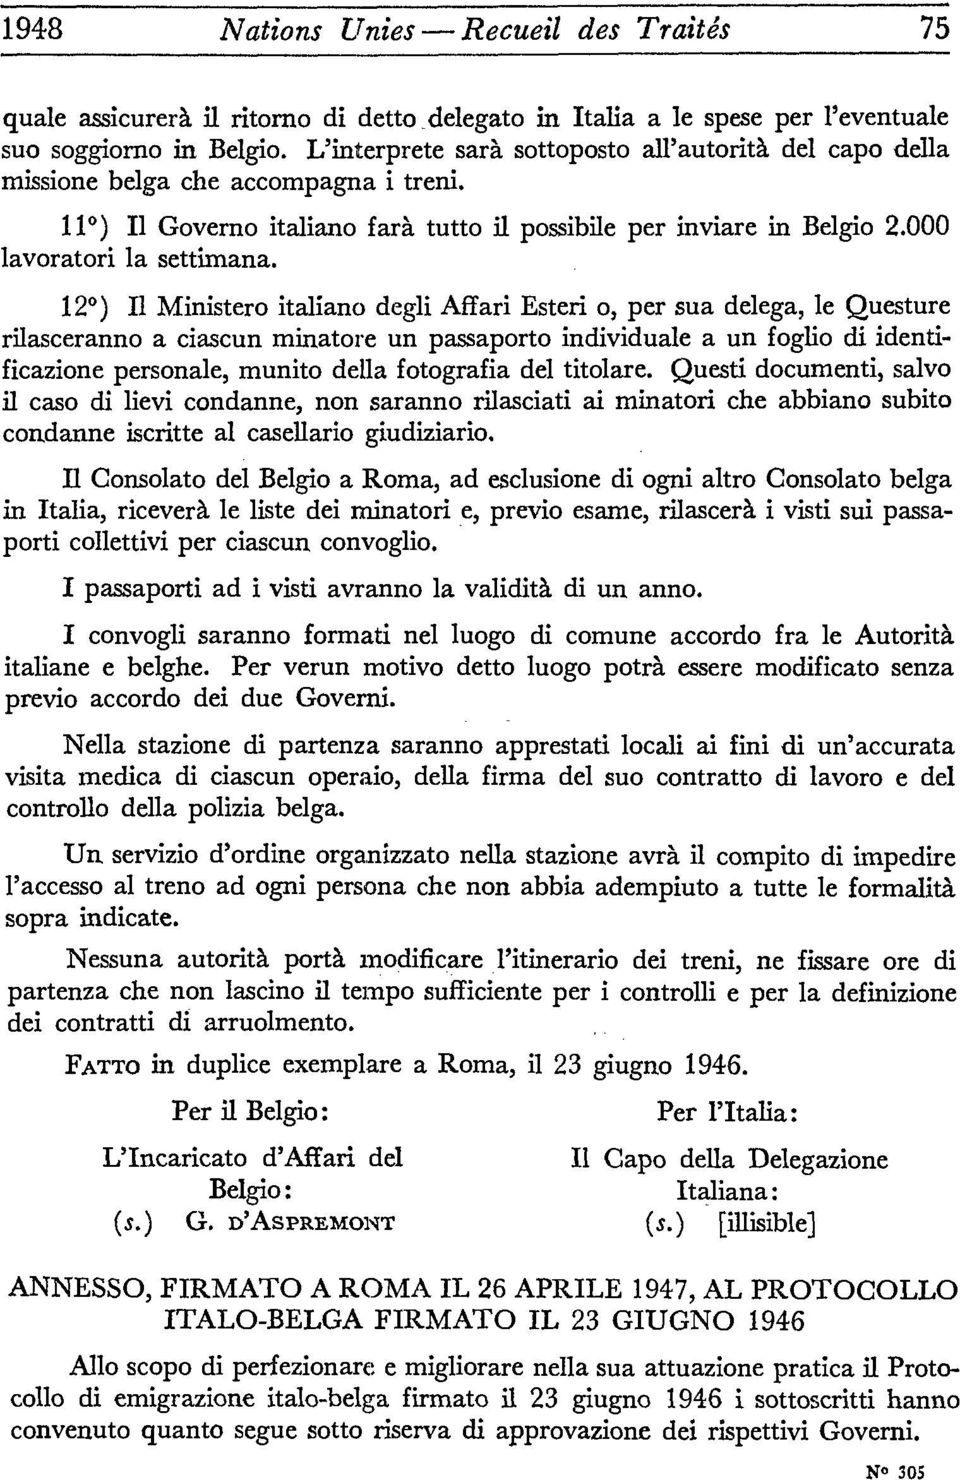 12 ) H Ministero italiano degli Affari Esteri o, per sua delega, le Questure rilasceranno a ciascun minatore un passaporto individuale a un foglio di identificazione personale, munito délia